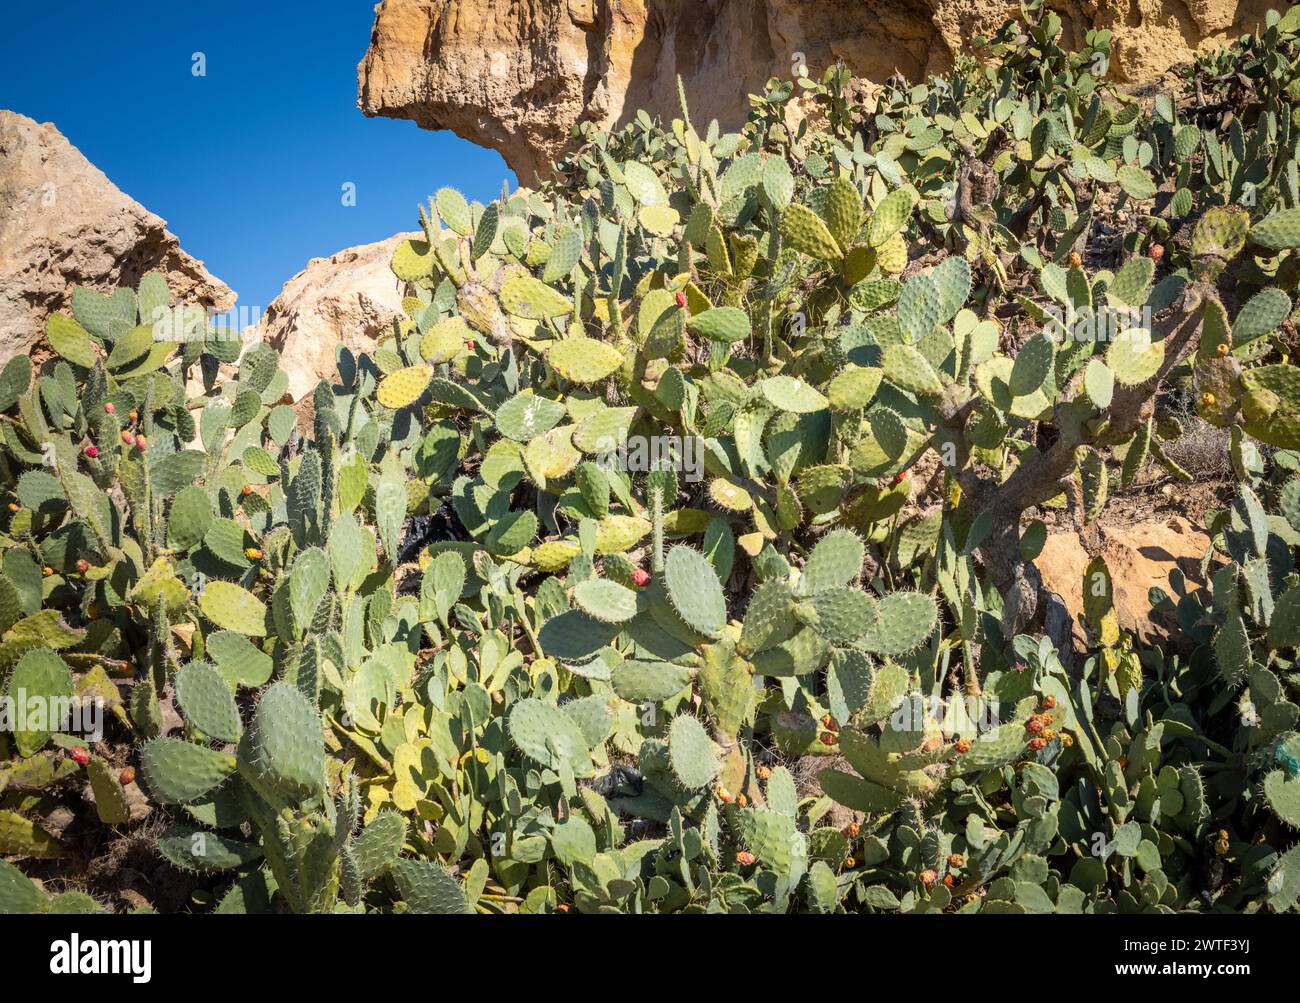 Ein großer Kaktuskaktus (Opuntia Ficus-indica) oder Berberfeige, der in Takrouna, Tunesien, wächst. Stockfoto